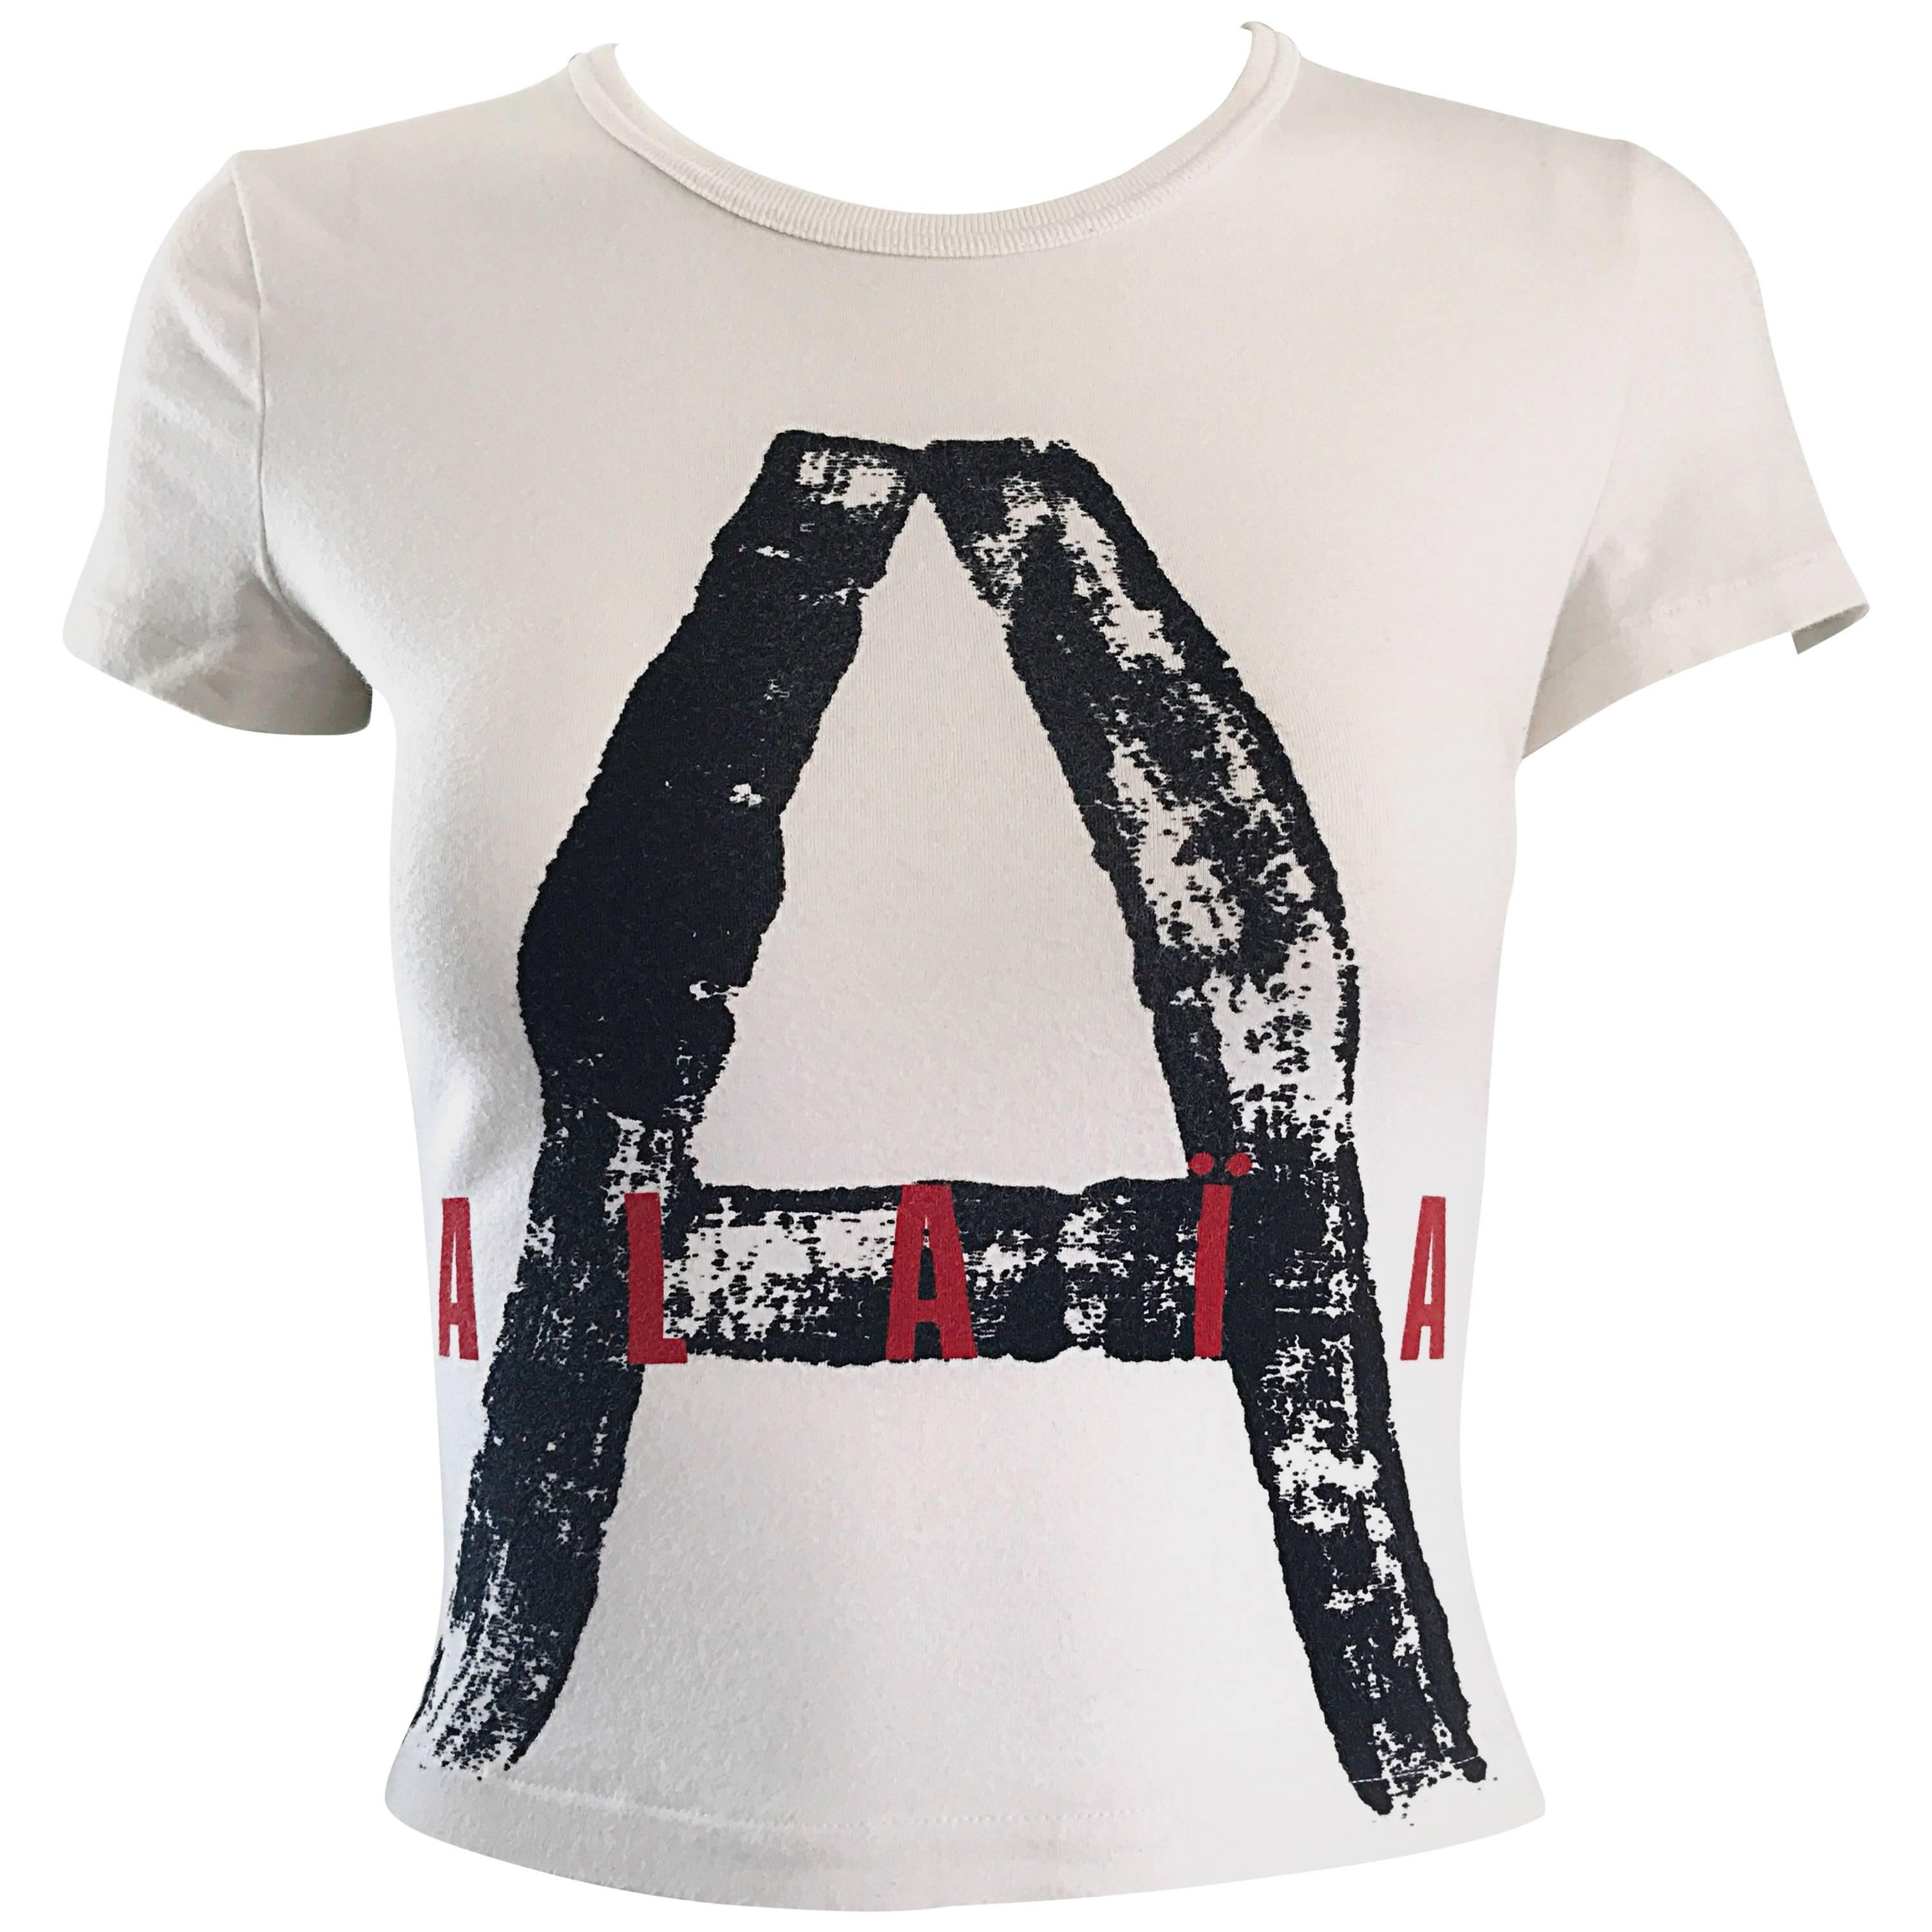 Rare Vintage Alaia X Comme Des Garcons 1990s Black + White + Red Crop Top Shirt